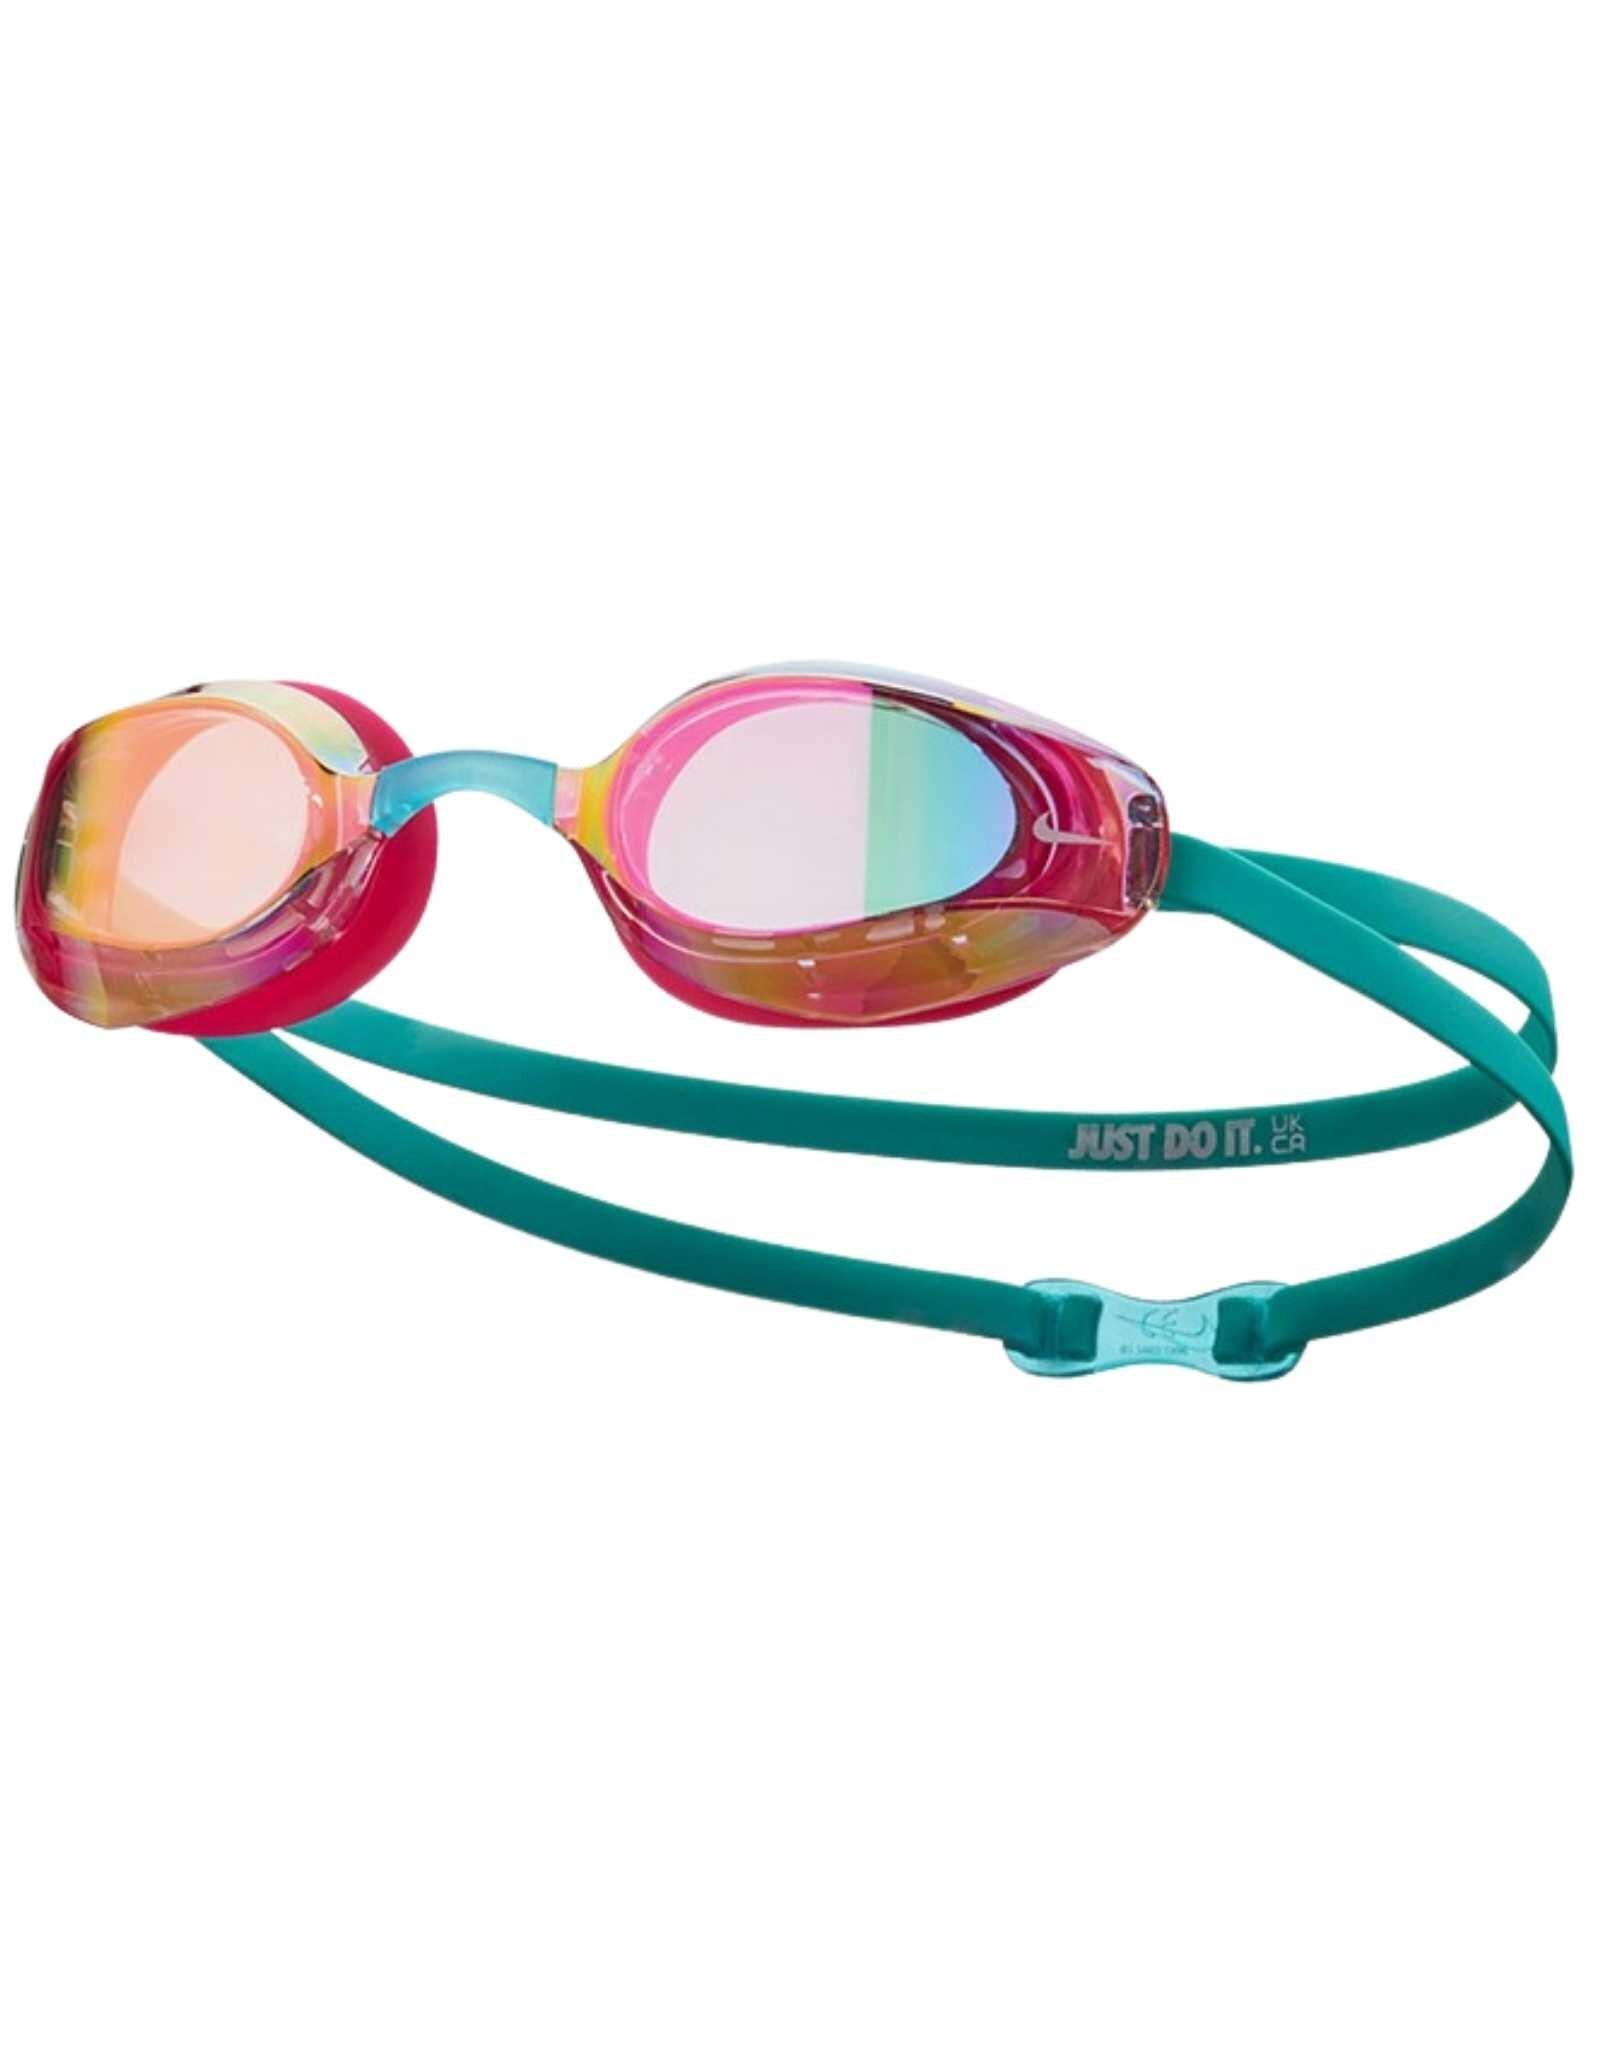 Swim vapor mirror goggle men's swimming swimming goggle 5/5